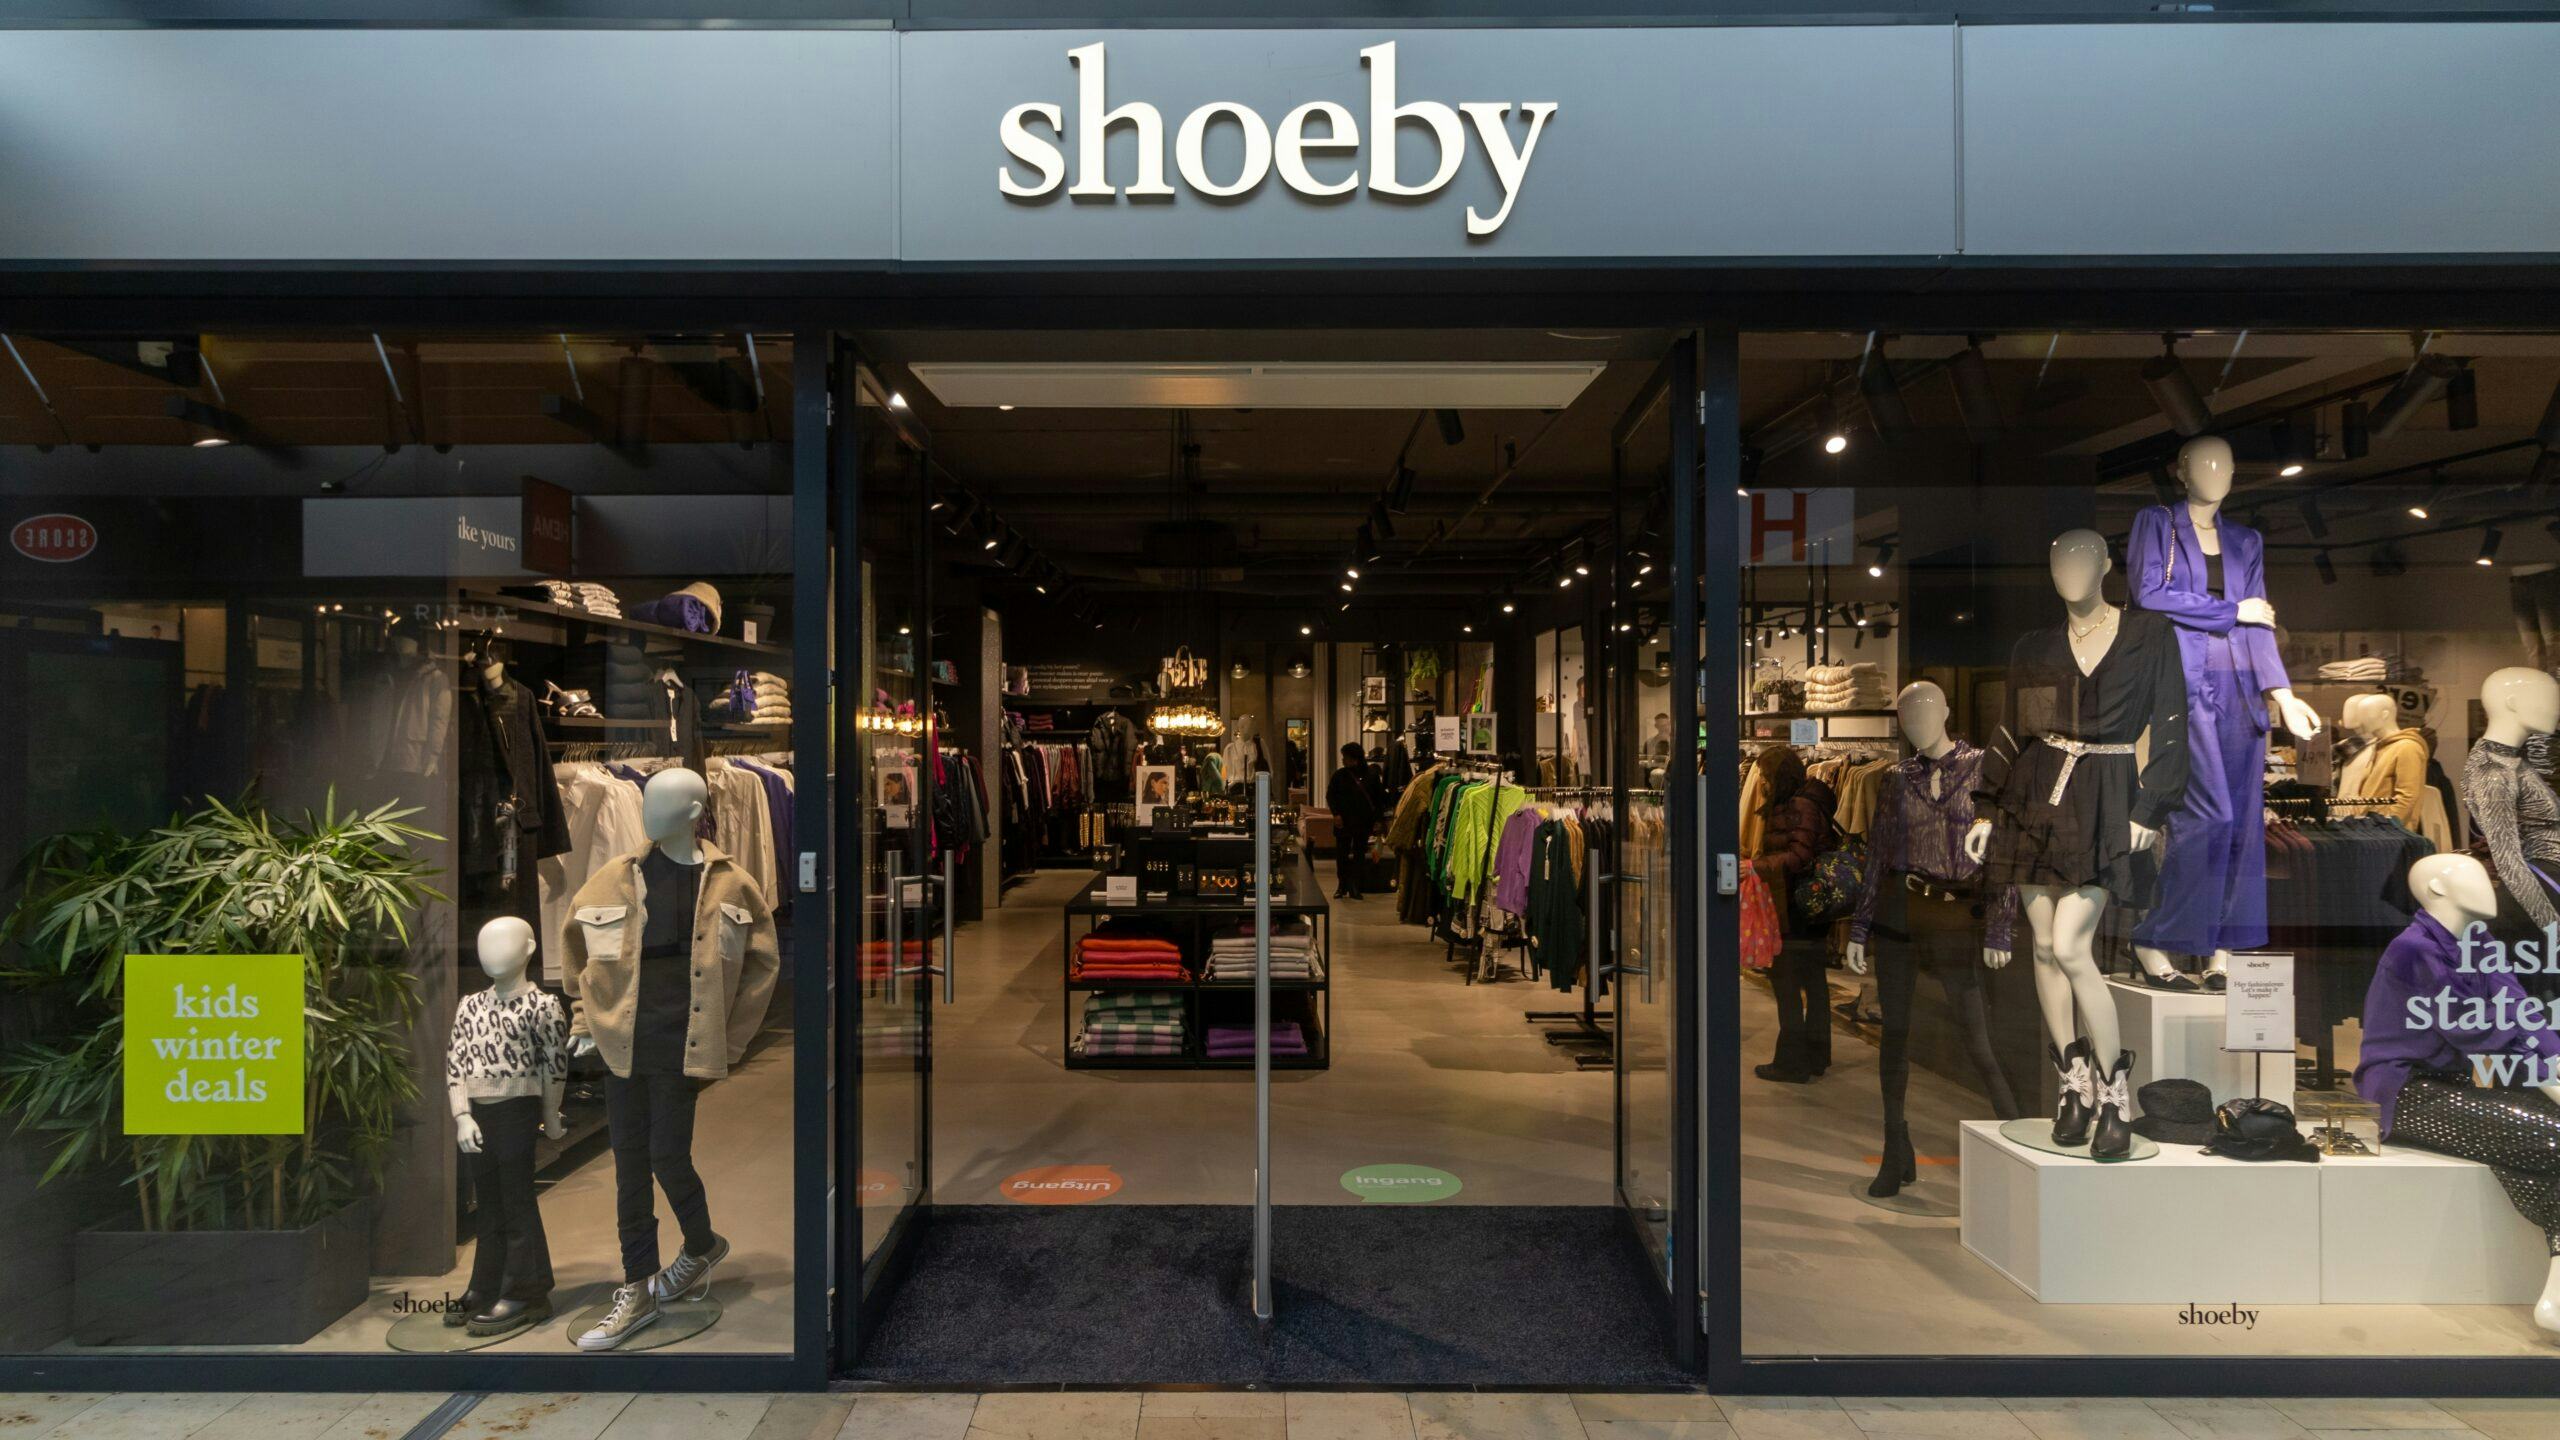 Modeketen Shoeby verwacht in december conceptakkoord schuldeisers